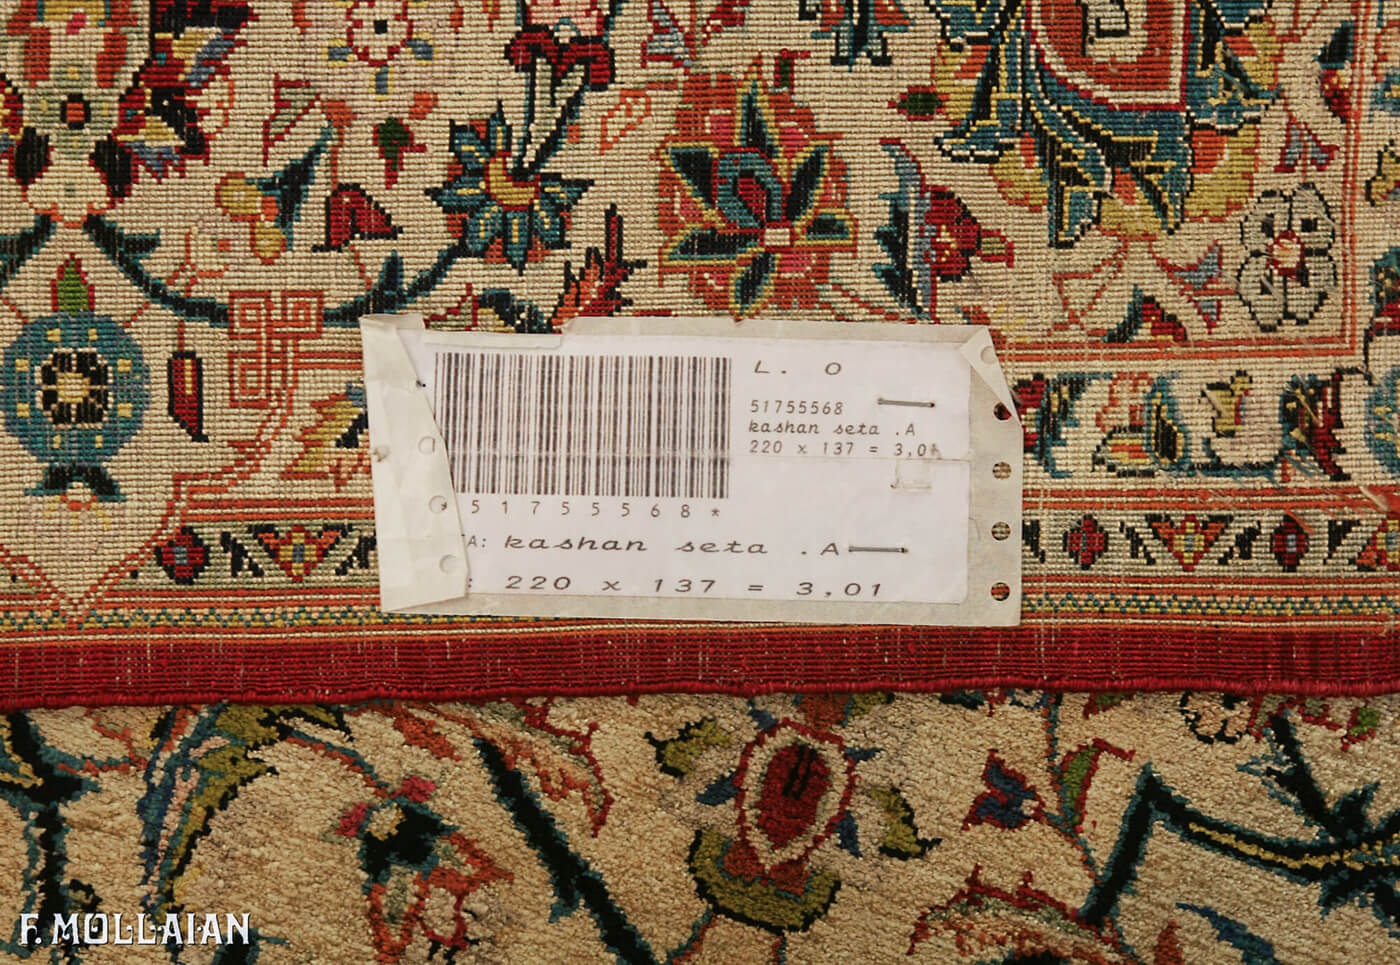 一对地毯 卡尚 丝 “Forutan” n:51755568